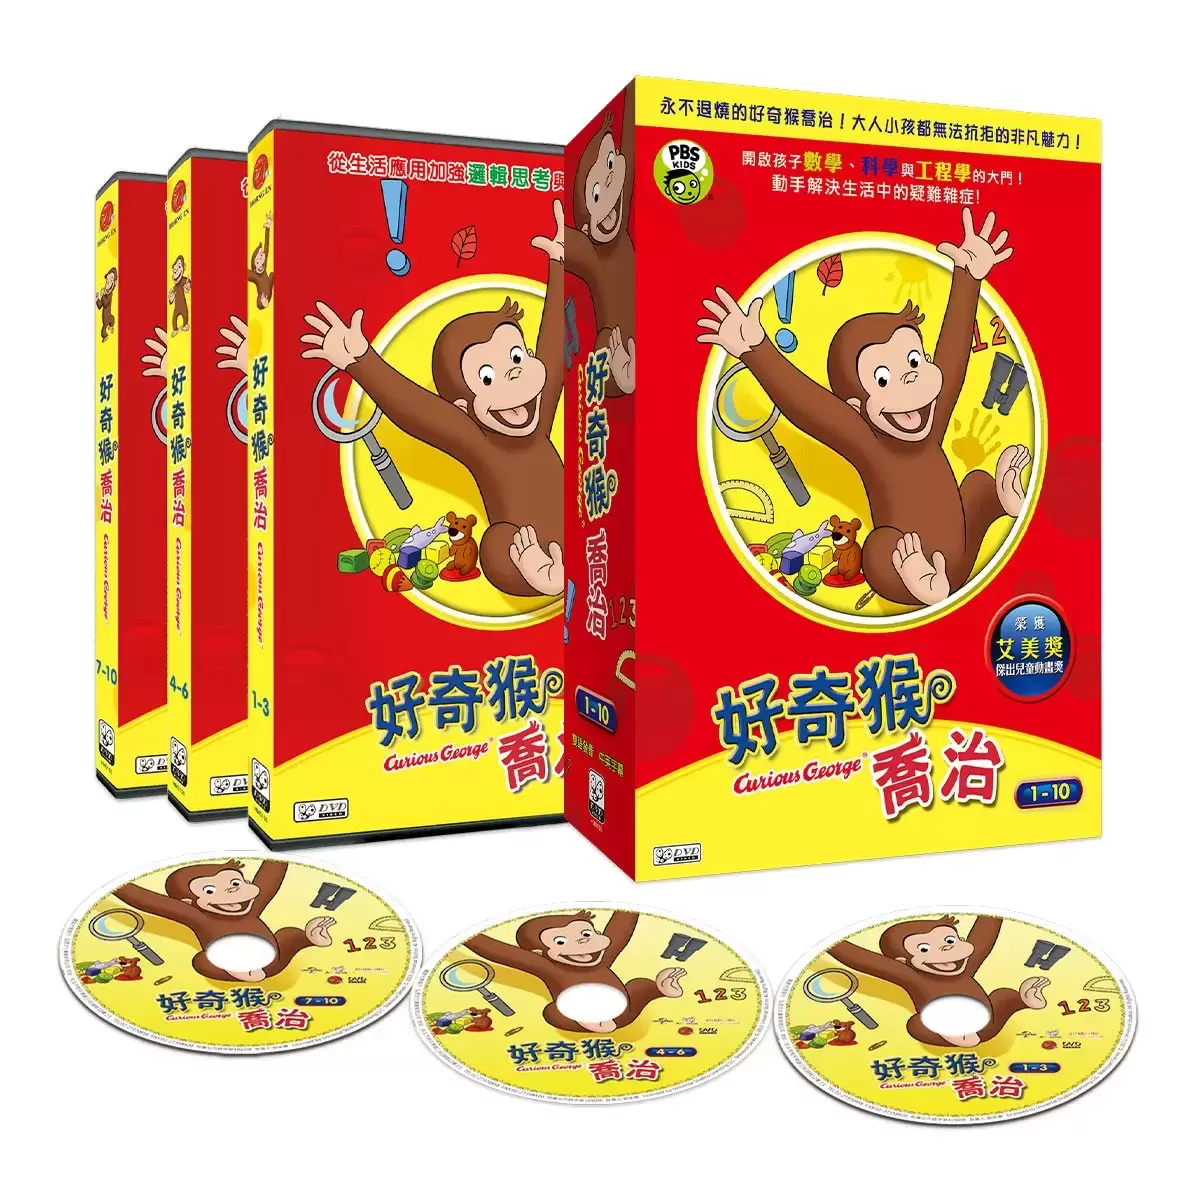 弘恩動畫 好奇猴喬治 雙語DVD 3片裝 第1-10集